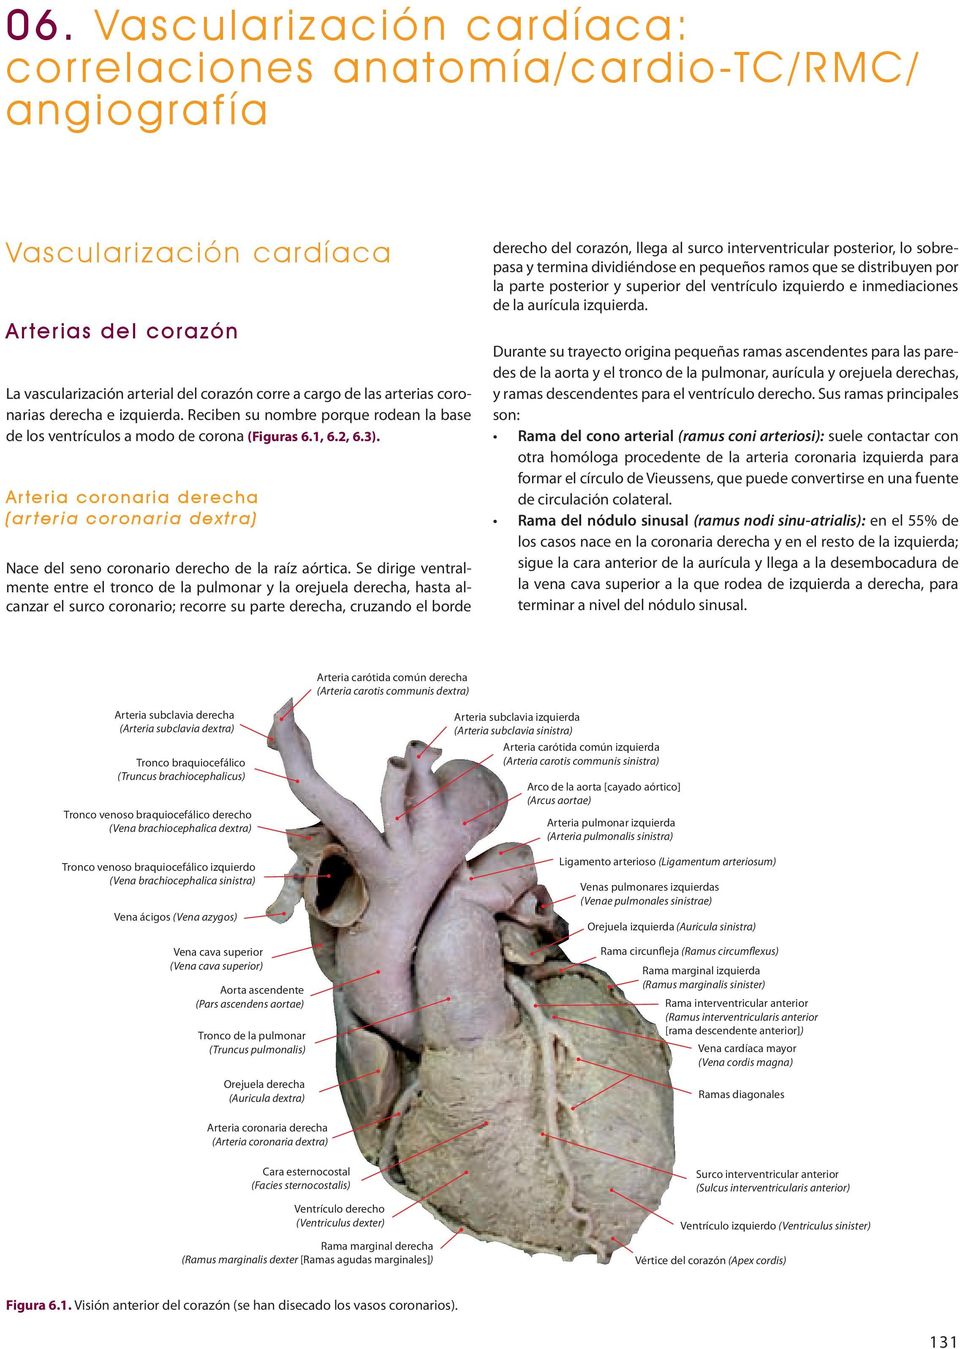 Arteria coronaria derecha (arteria coronaria dextra) Nace del seno coronario derecho de la raíz aórtica.